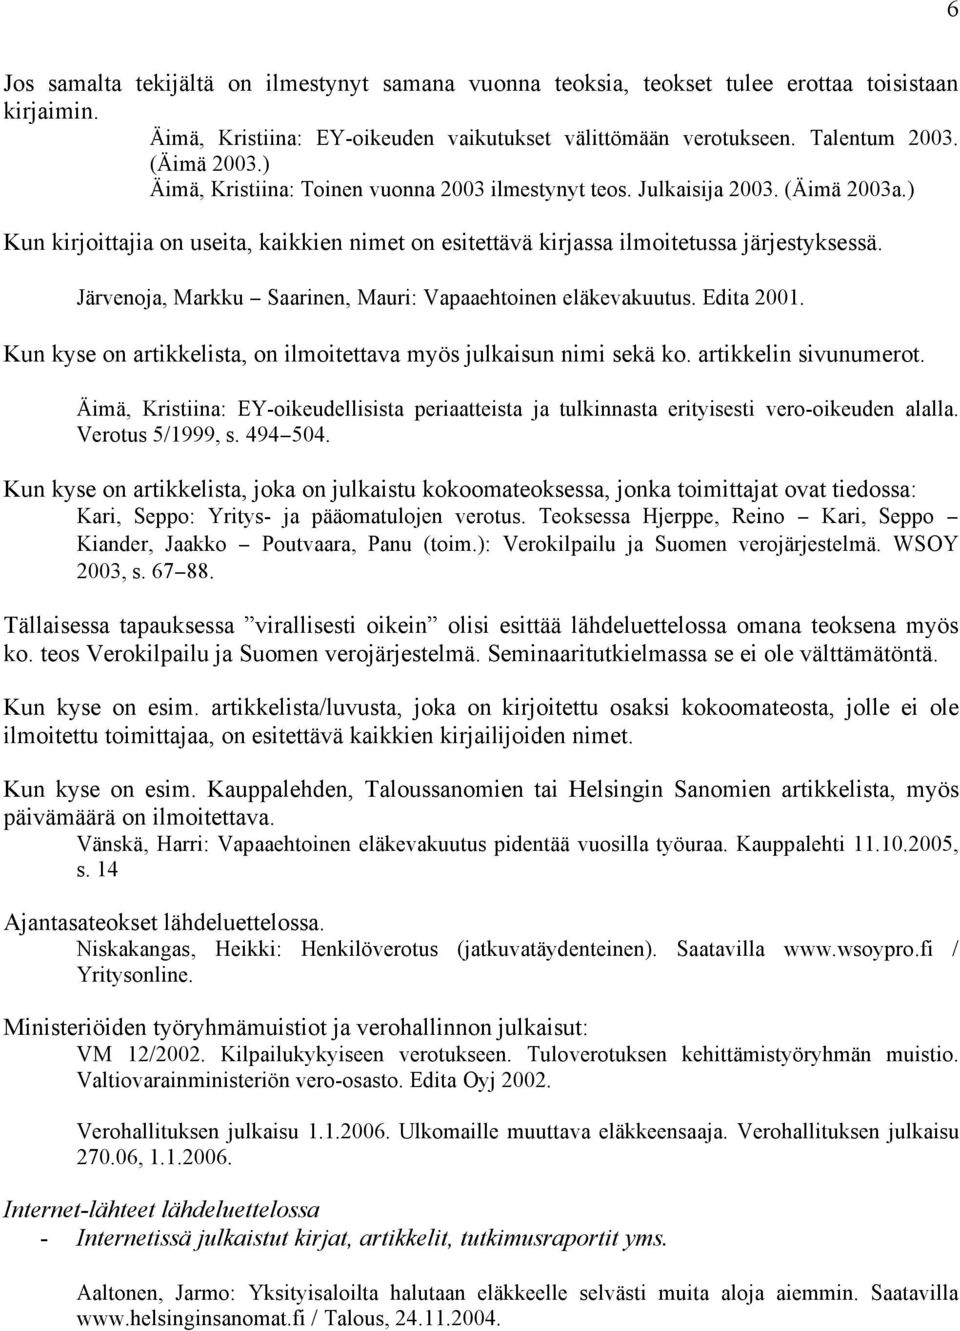 Järvenoja, Markku Saarinen, Mauri: Vapaaehtoinen eläkevakuutus. Edita 2001. Kun kyse on artikkelista, on ilmoitettava myös julkaisun nimi sekä ko. artikkelin sivunumerot.